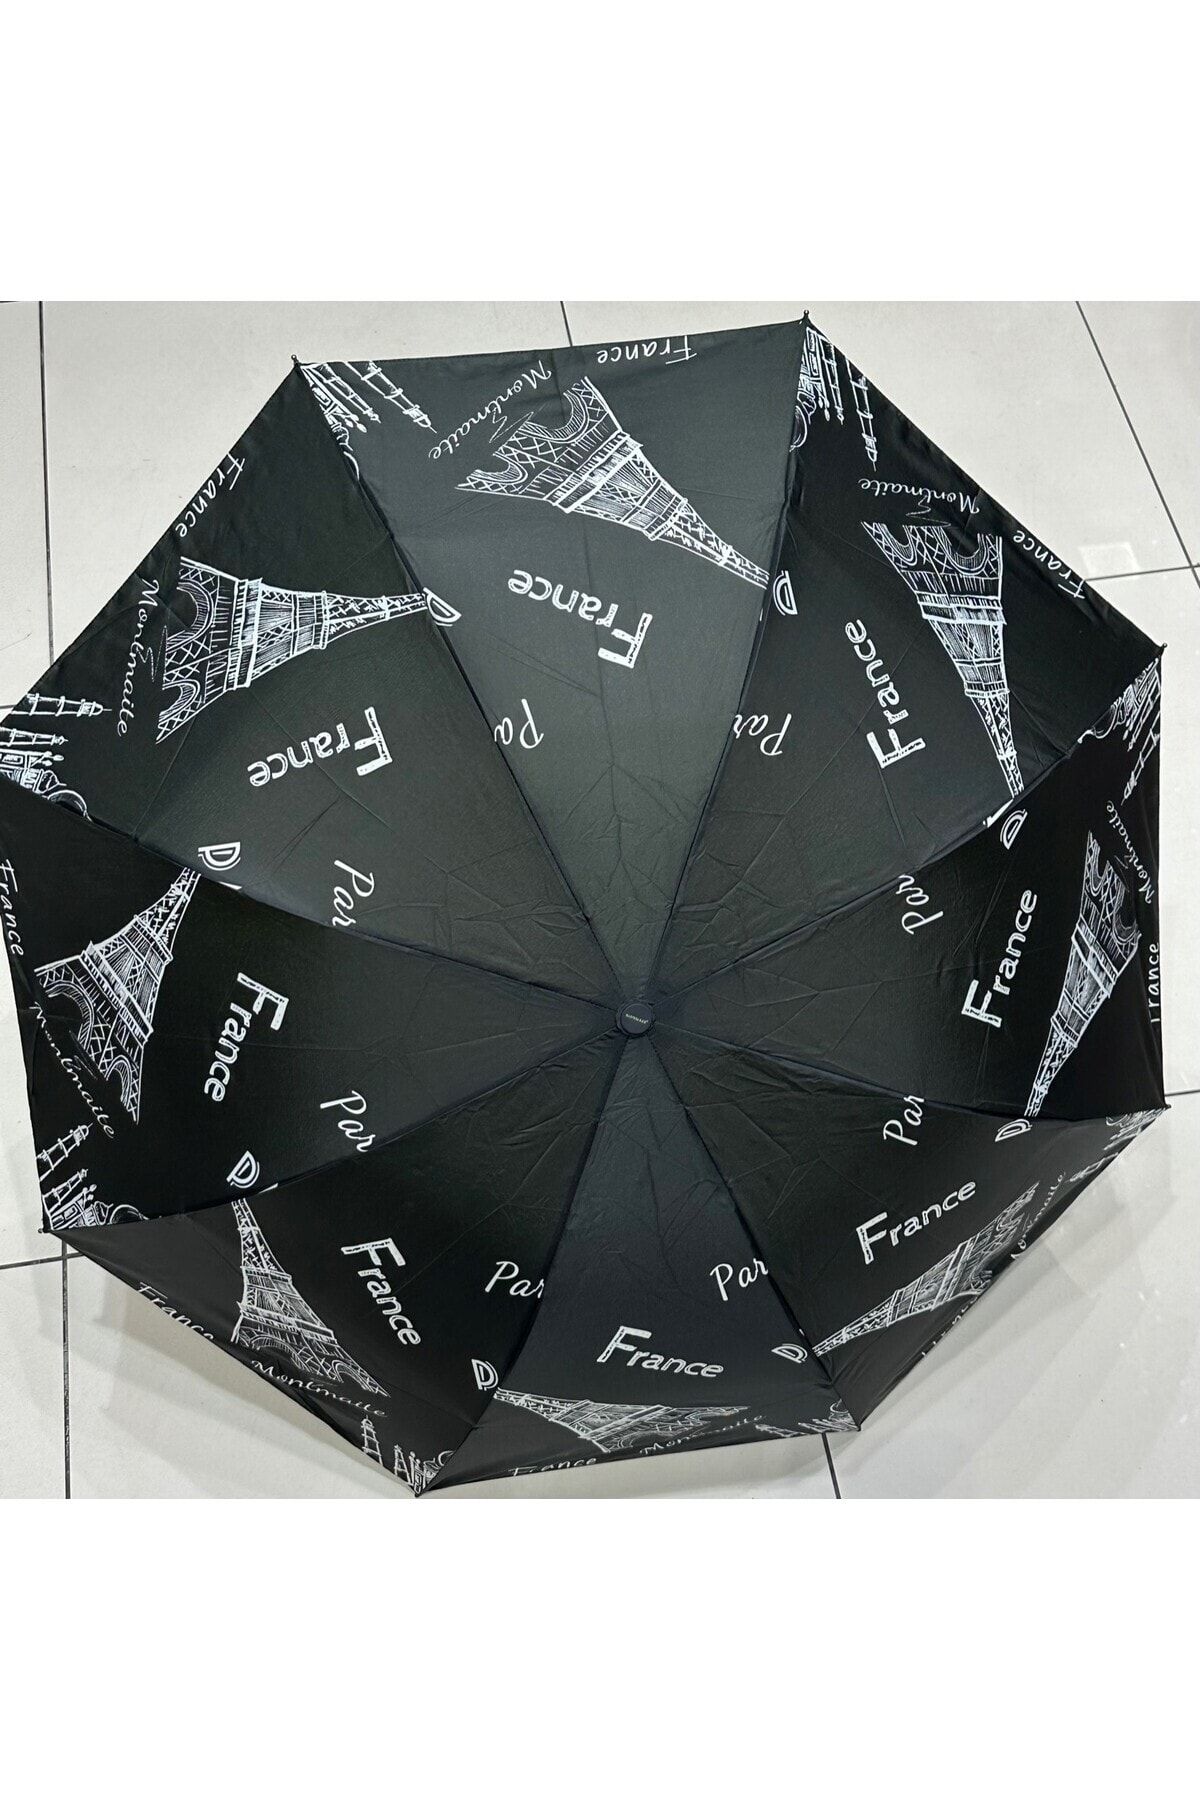 Rainwalker Özel Yapım 8 Telli Yarasa Model Kırılmaz Şemsiye